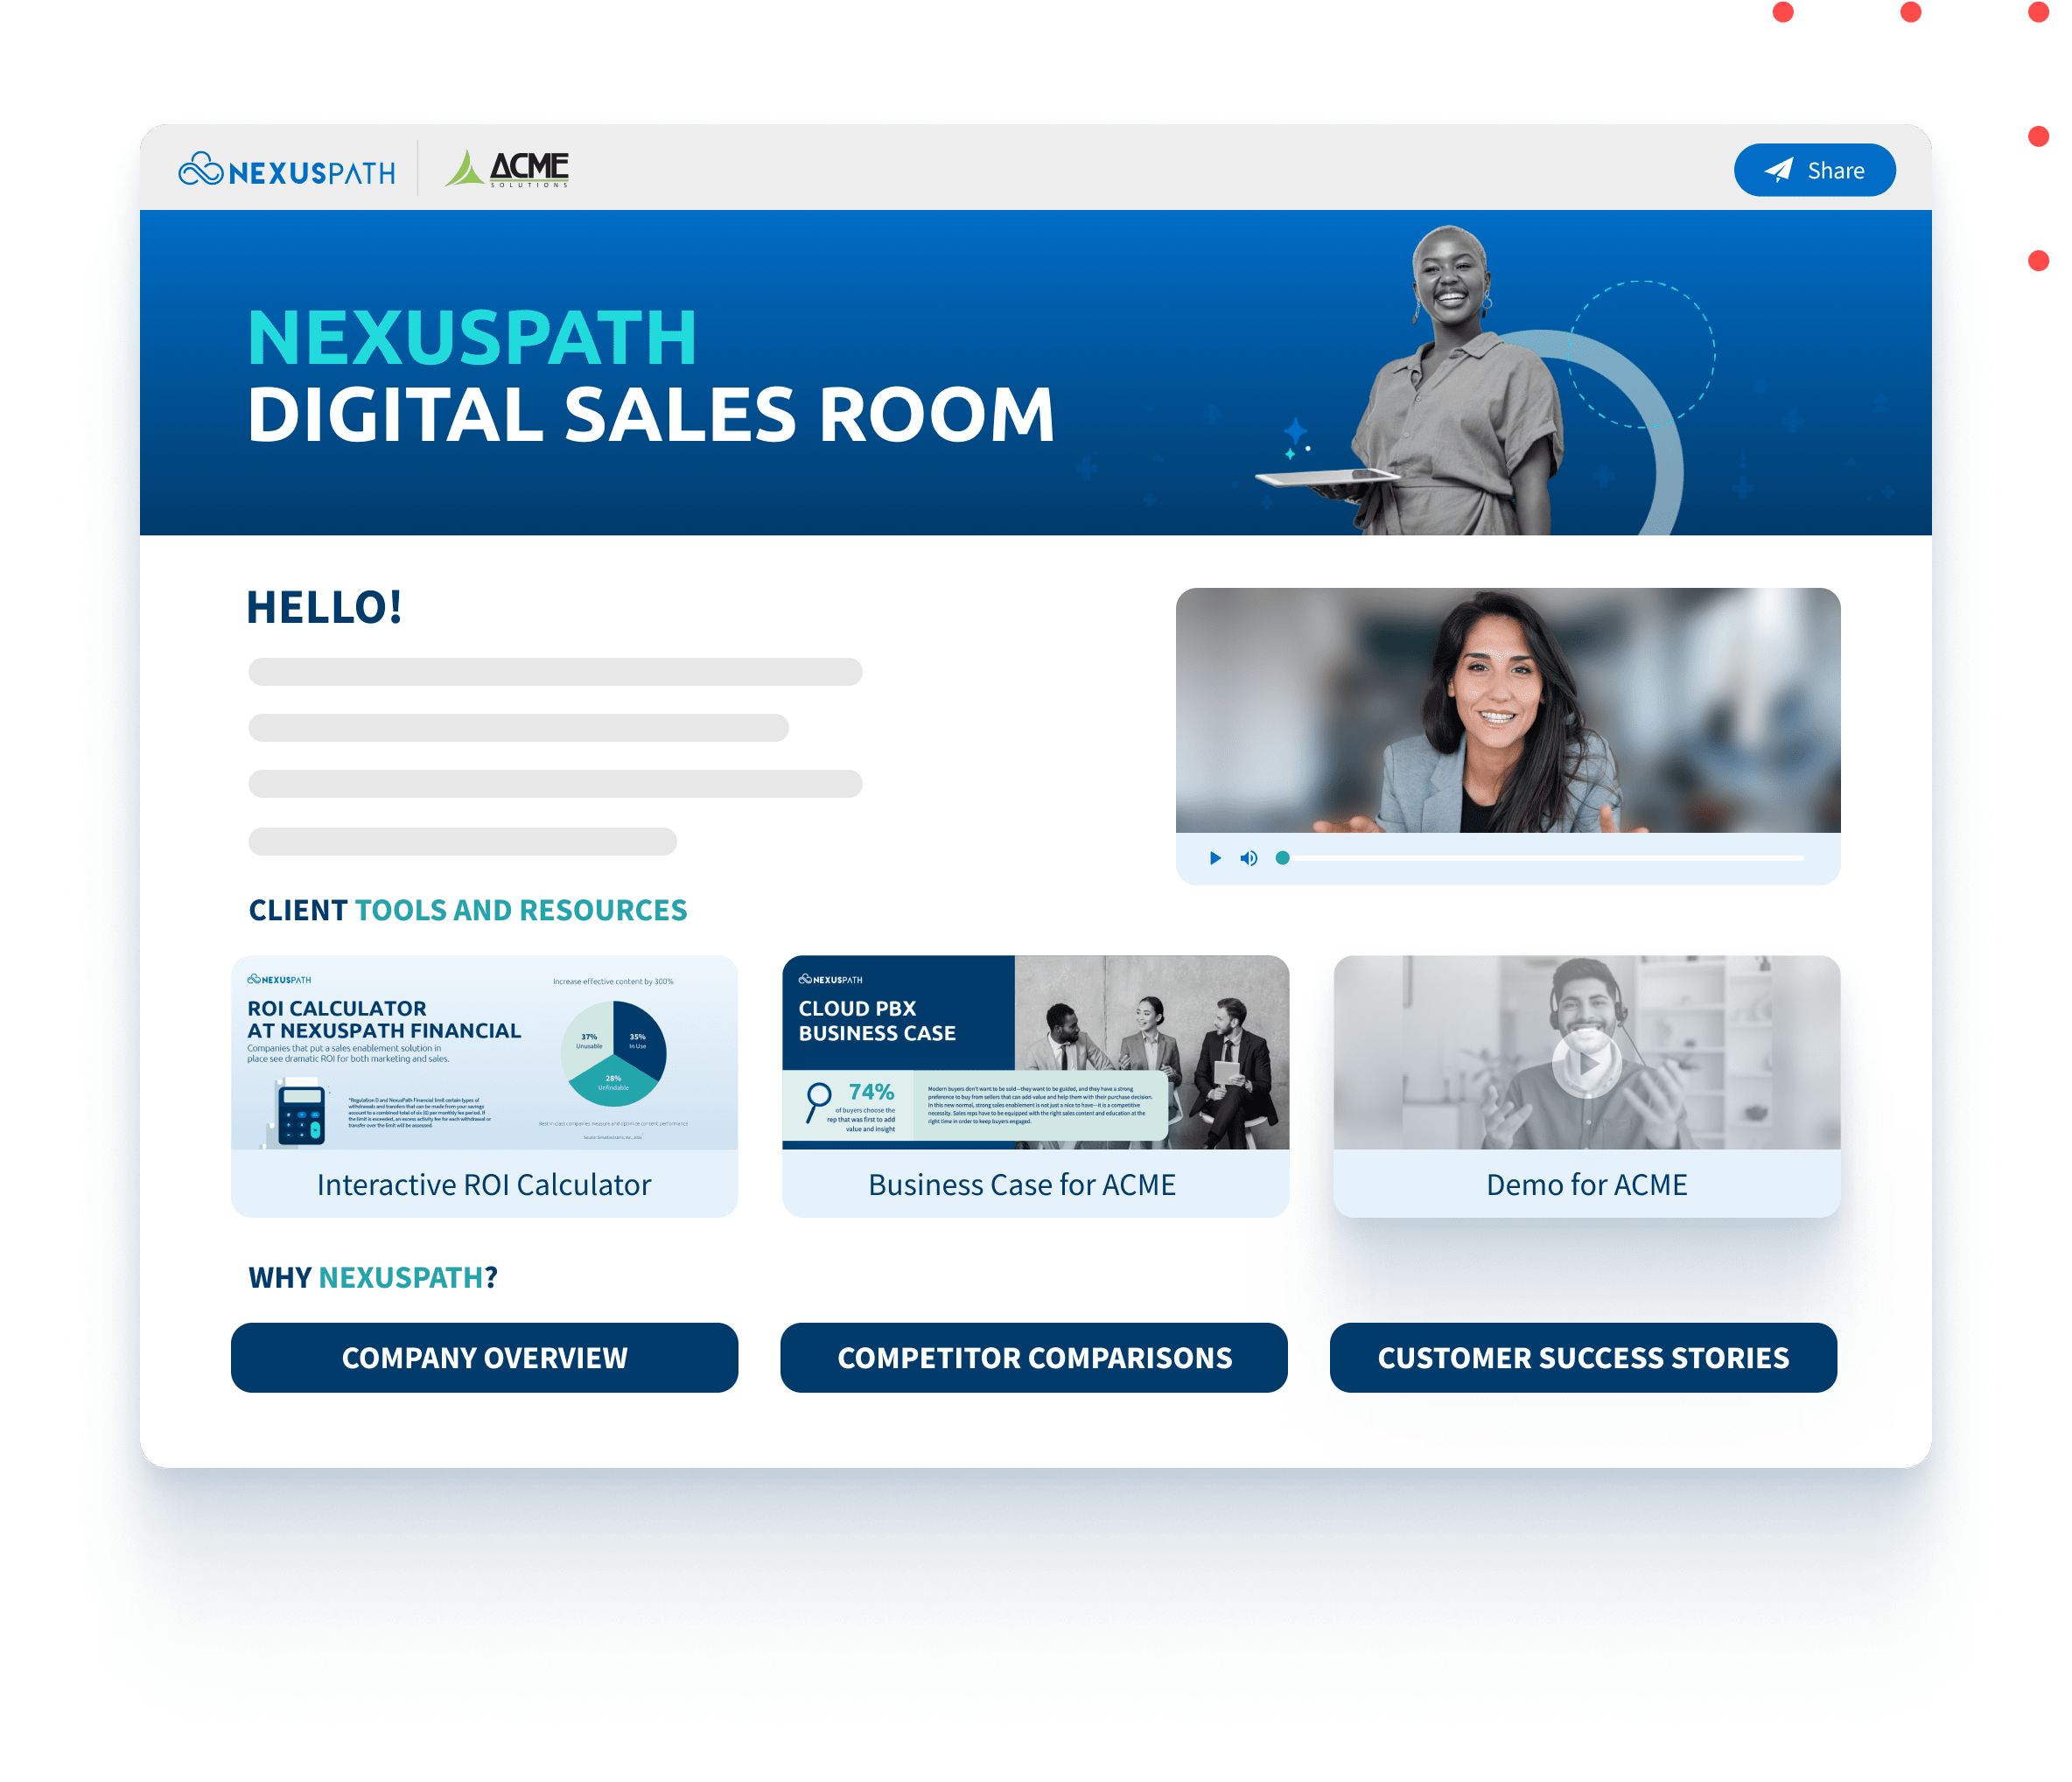 Digital sales room